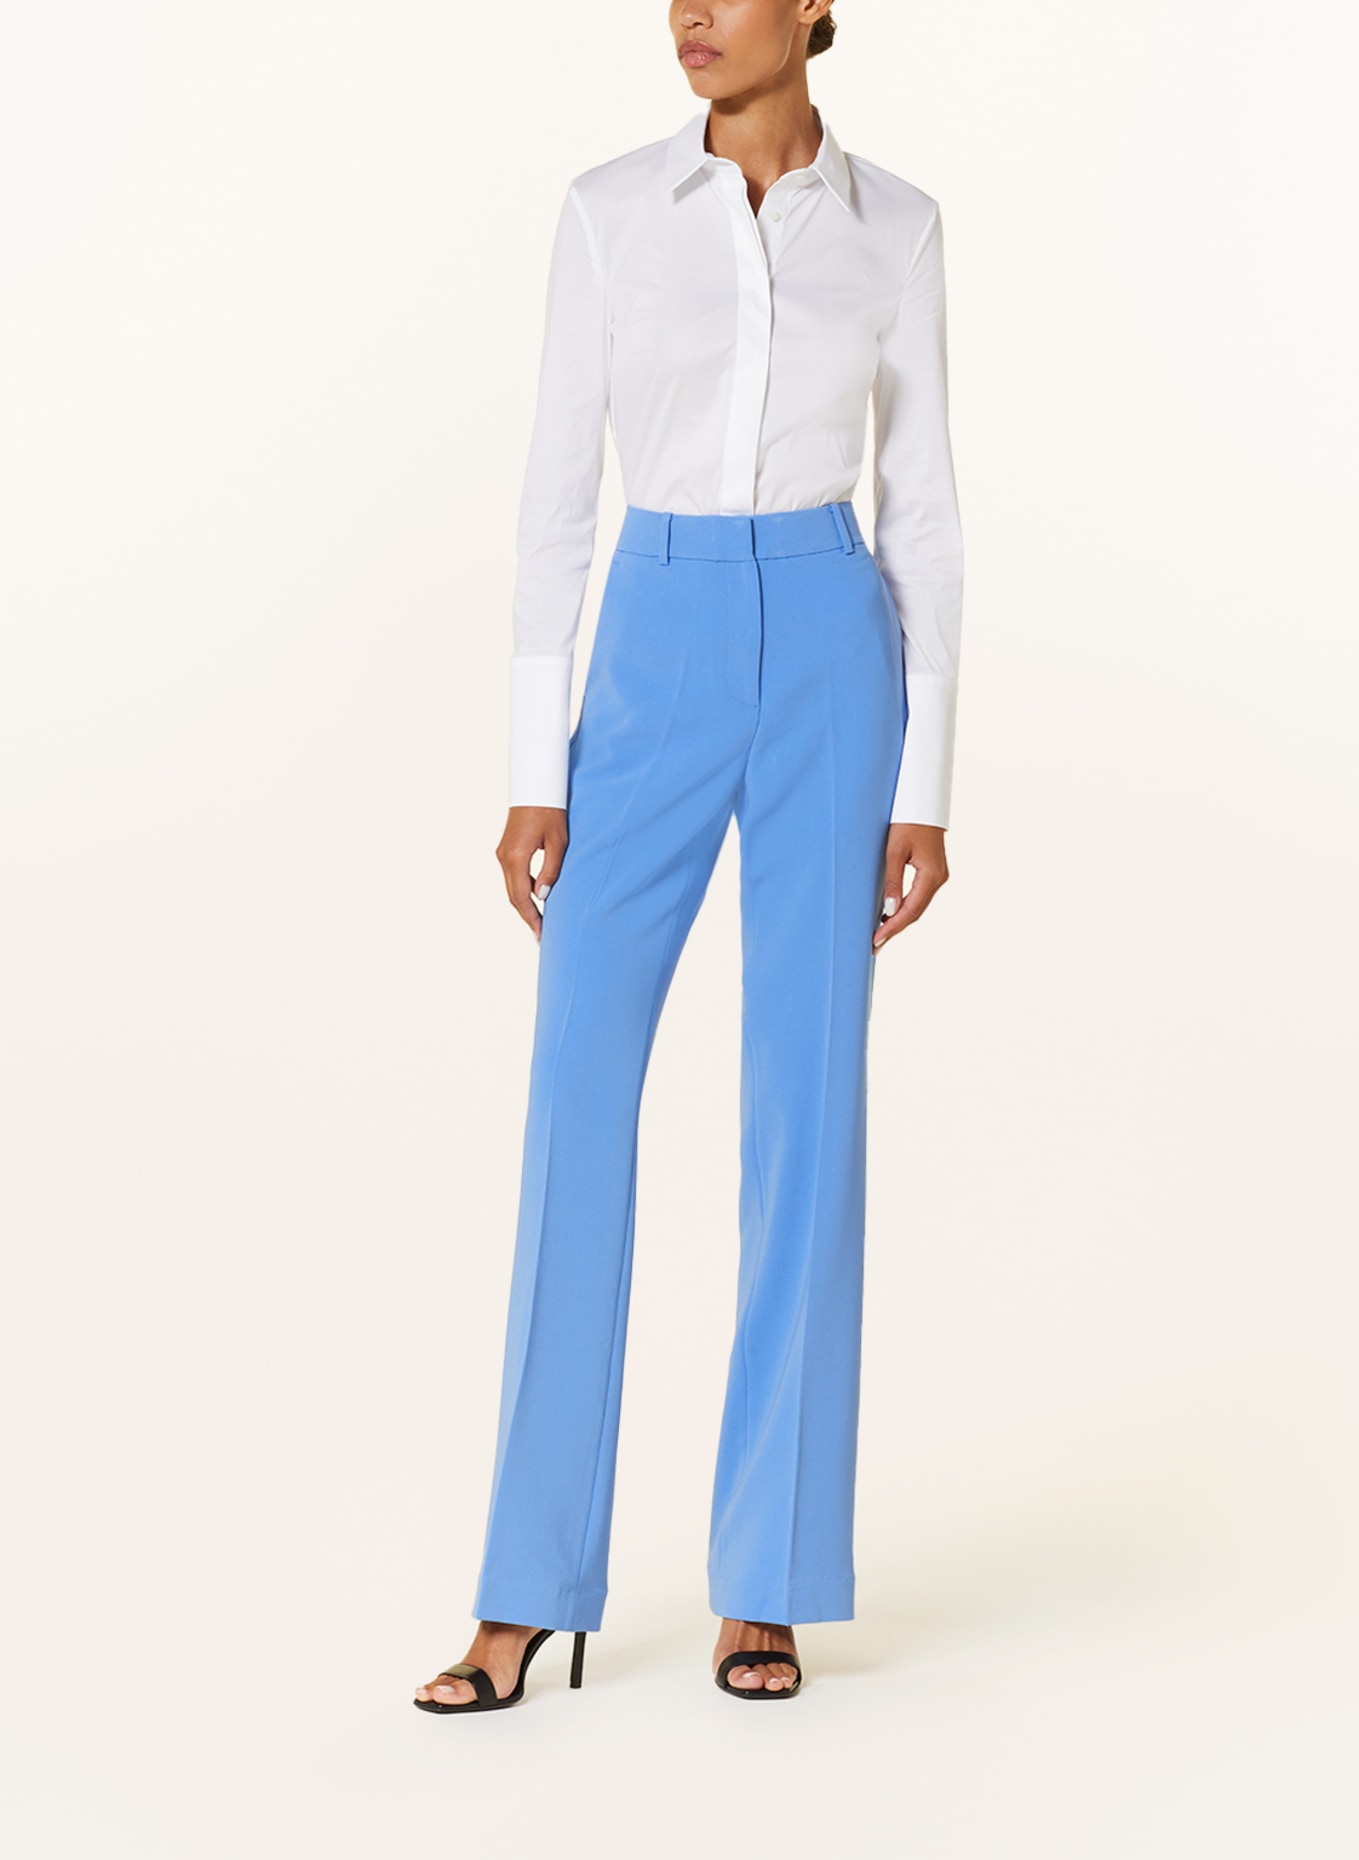 MICHAEL KORS Trousers, Color: LIGHT BLUE (Image 2)